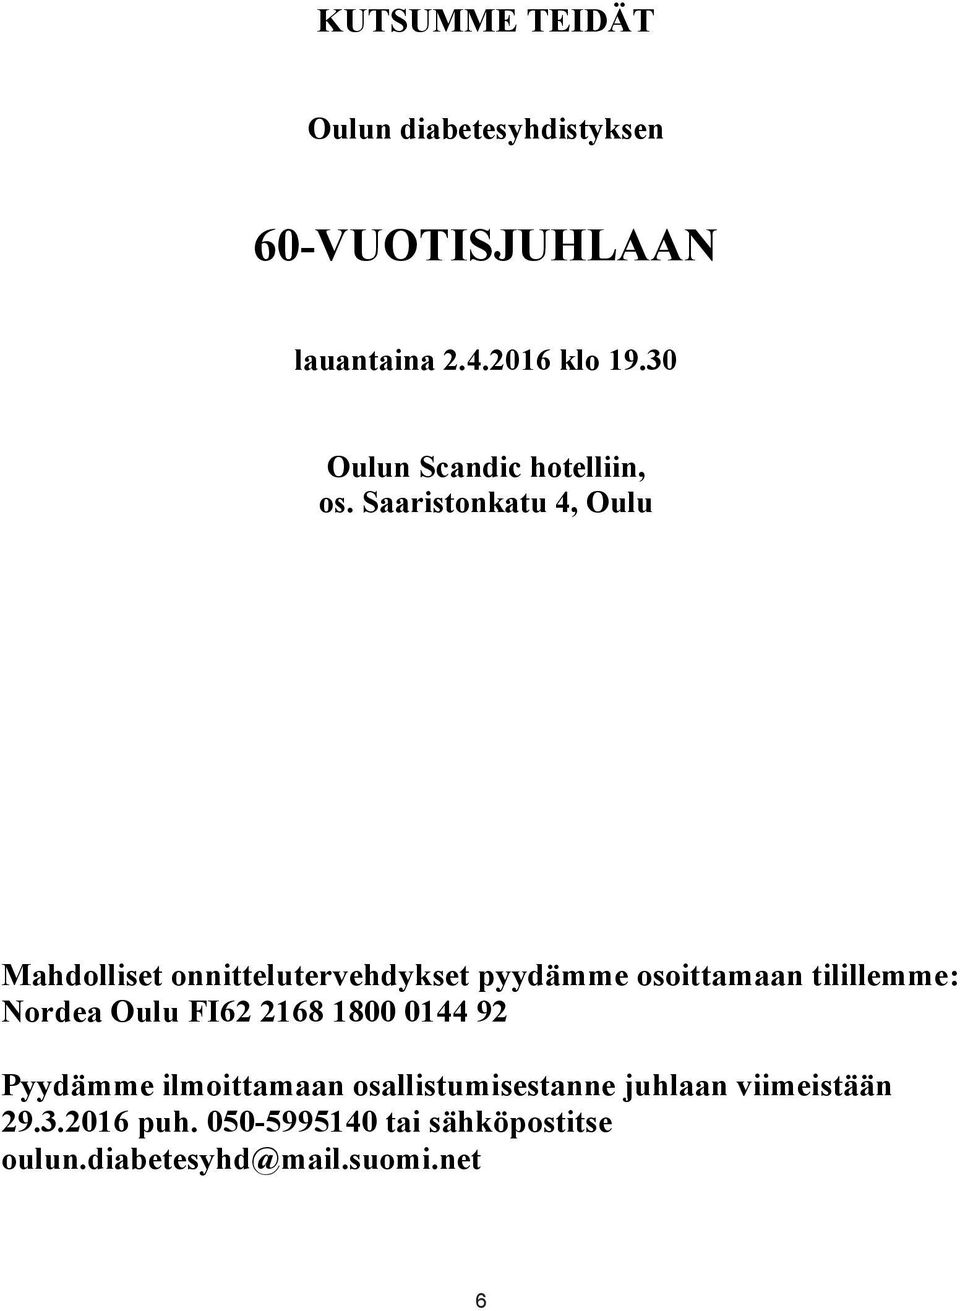 Saaristonkatu 4, Oulu Mahdolliset onnittelutervehdykset pyydämme osoittamaan tilillemm Nordea Mahdolliset Oulu onnittelutervehdykset FI62 2168 1800 0144 pyydämme 92 osoittamaan tilillemme: